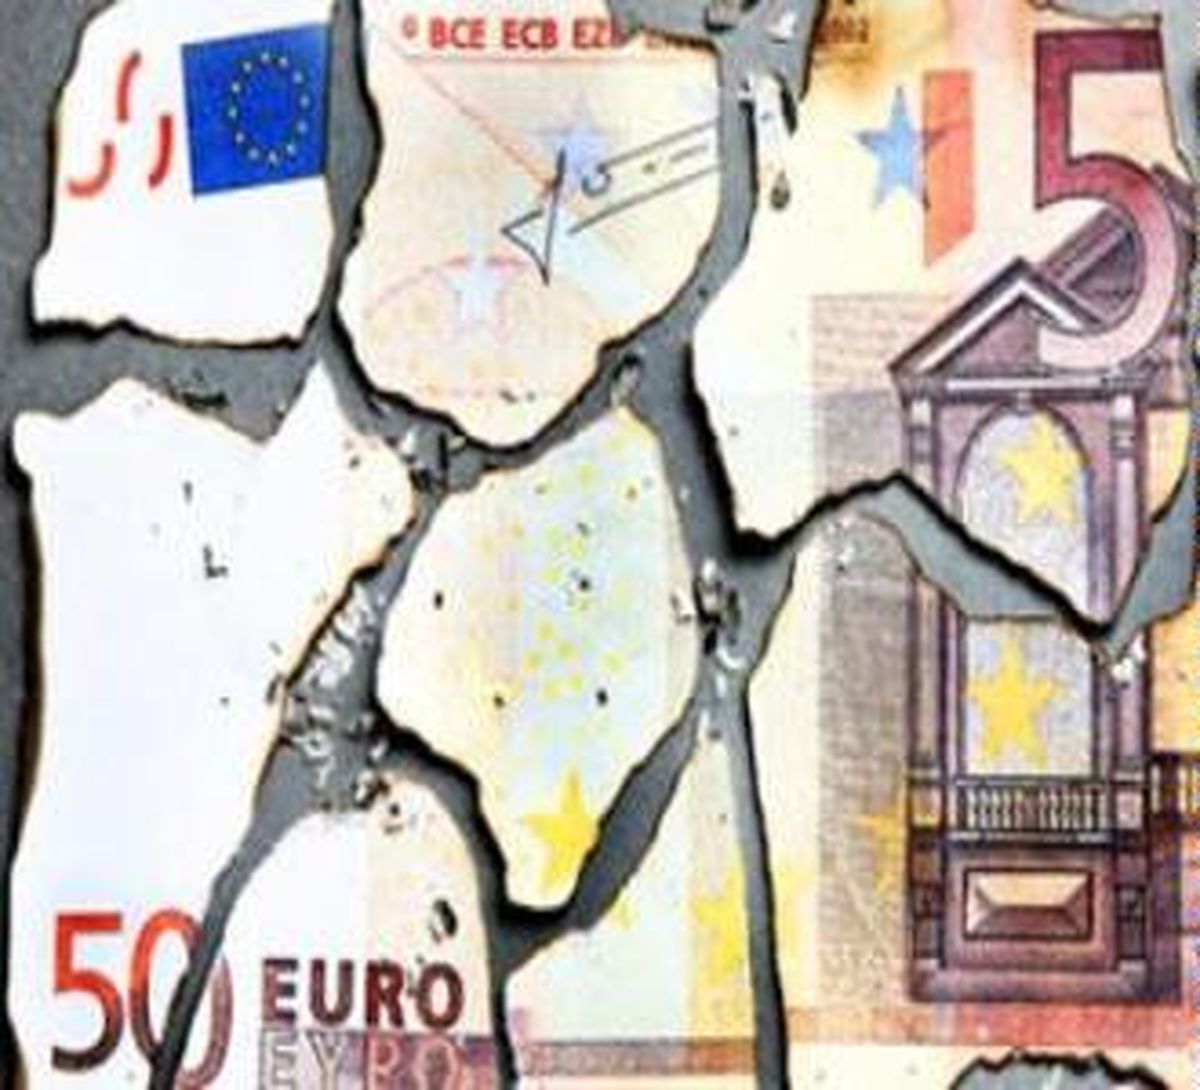 اتحادیه اروپا مسئول بحران اقتصادی منطقه "یورو" است